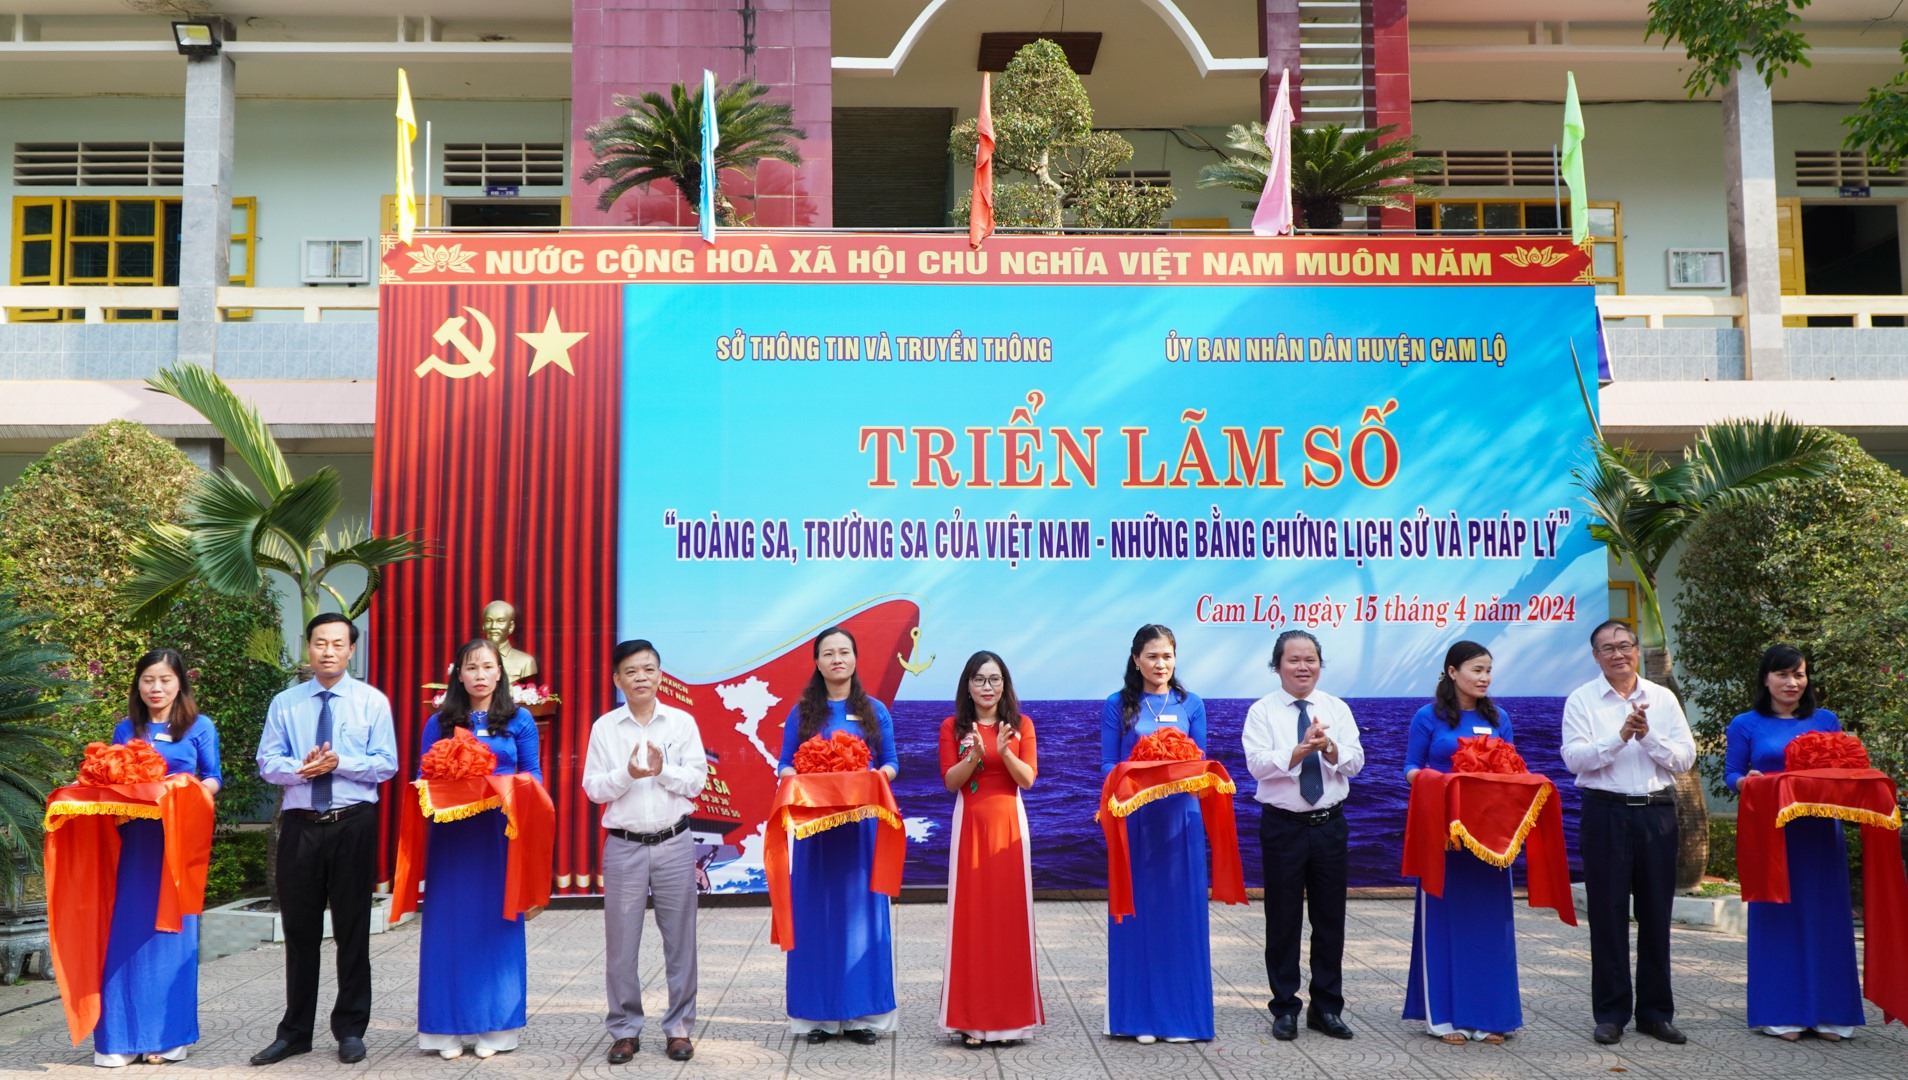 Cắt băng khai mạc Triển lãm số “Hoàng Sa, Trường Sa của Việt Nam - Những bằng chứng lịch sử và pháp lý” - Ảnh: Lê Trường